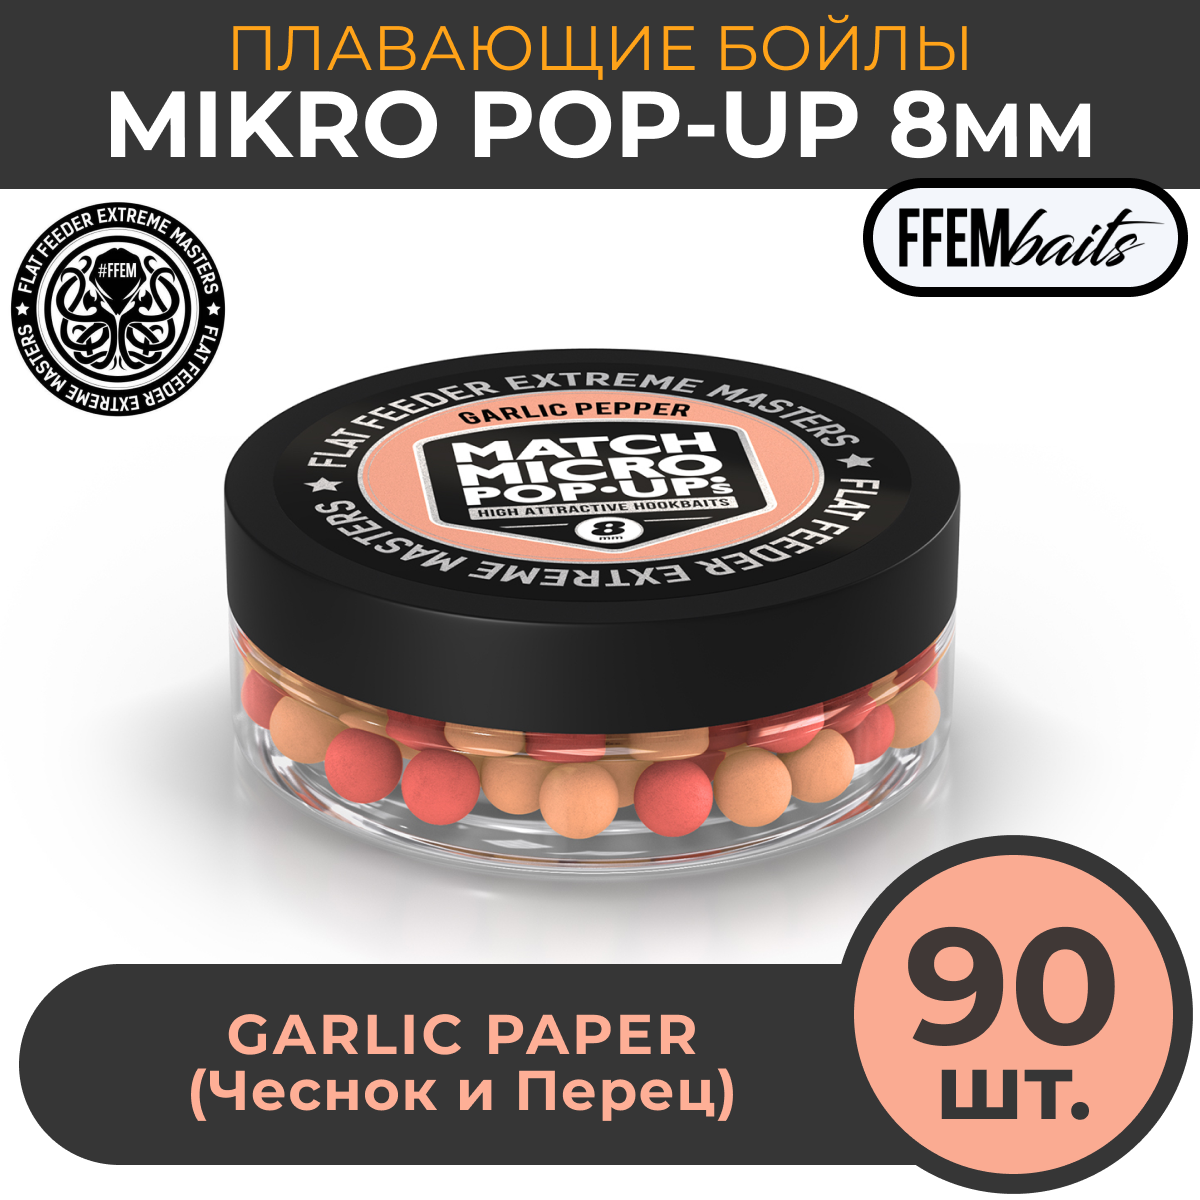 Плавающие бойлы Match Micro POP-UP 8 мм насадочные поп-ап / FFEM Pop-Up Micro Garlic Pepper 8mm чеснок и черный перец